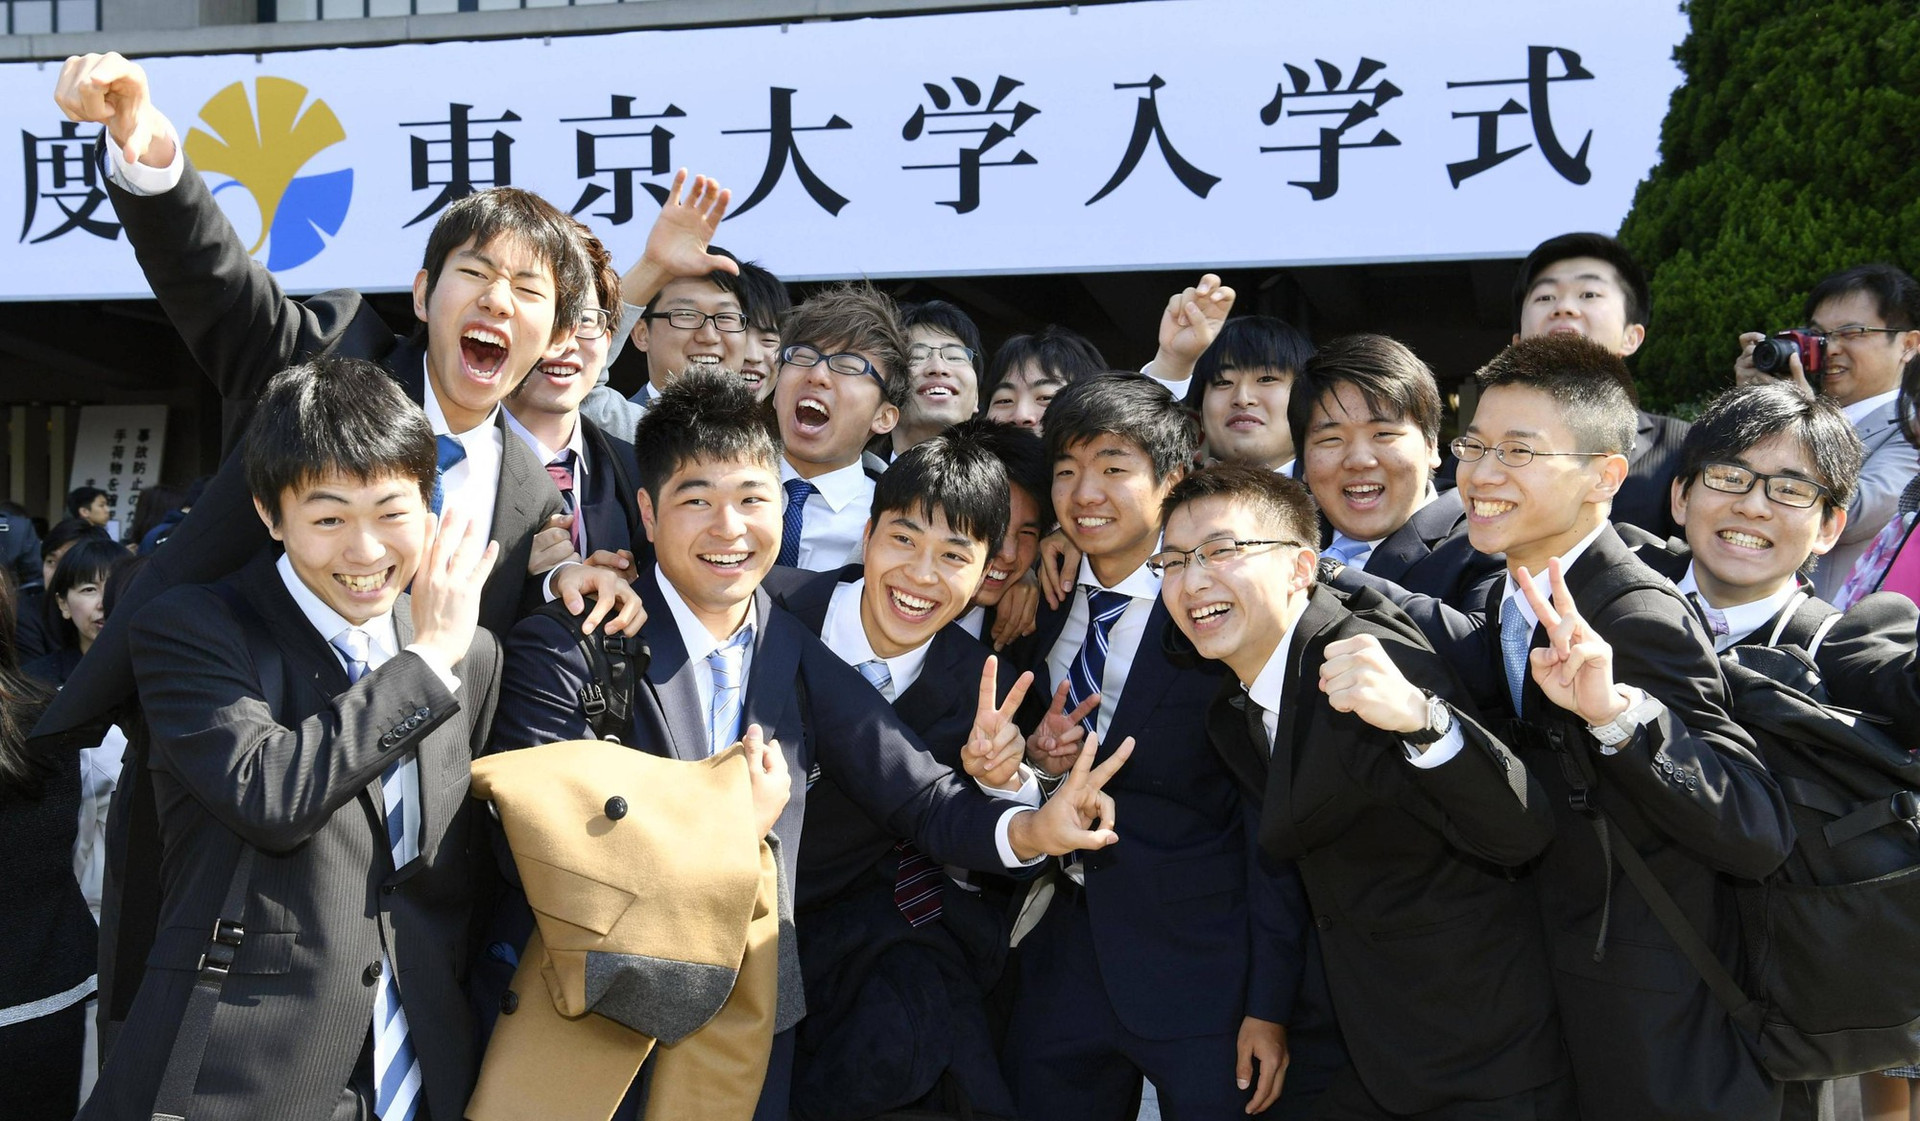 Sở GD&ĐT Hà Nội cảnh báo thông tin lừa đảo về du học Nhật Bản